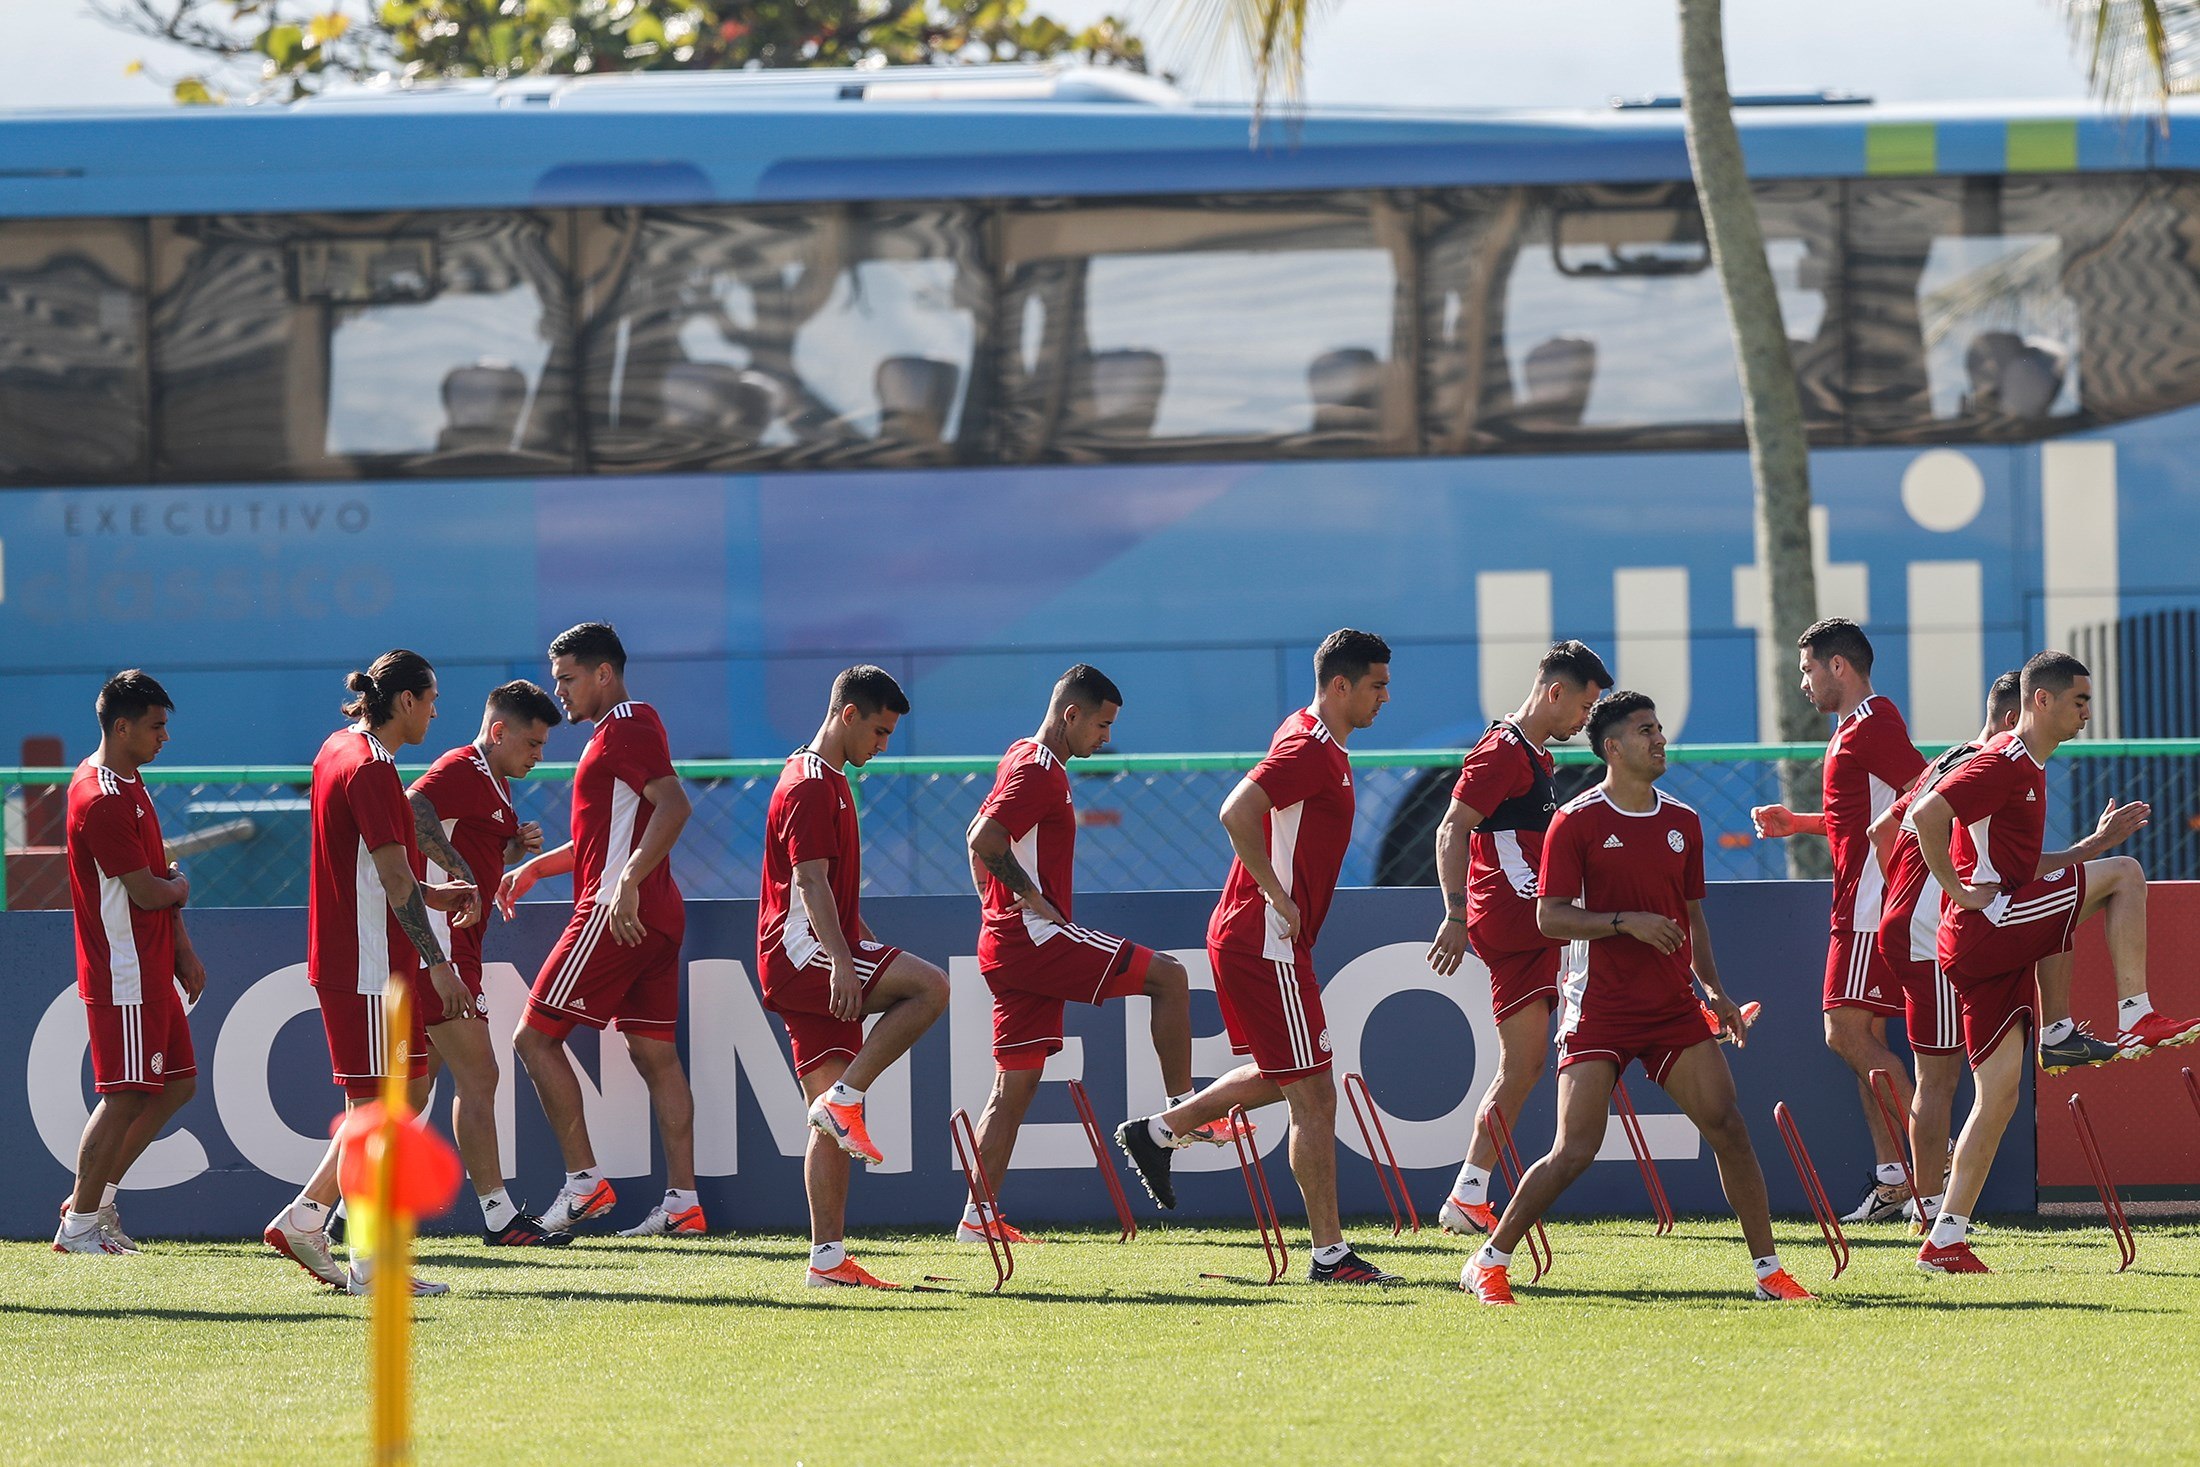  Los jugadores de la selección de Paraguay entrenan este sábado en le estadio Maracaná, un día antes de enfrentar a la selección de Qatar por la Copa América 2019. (Foto Prensa Libre: EFE).